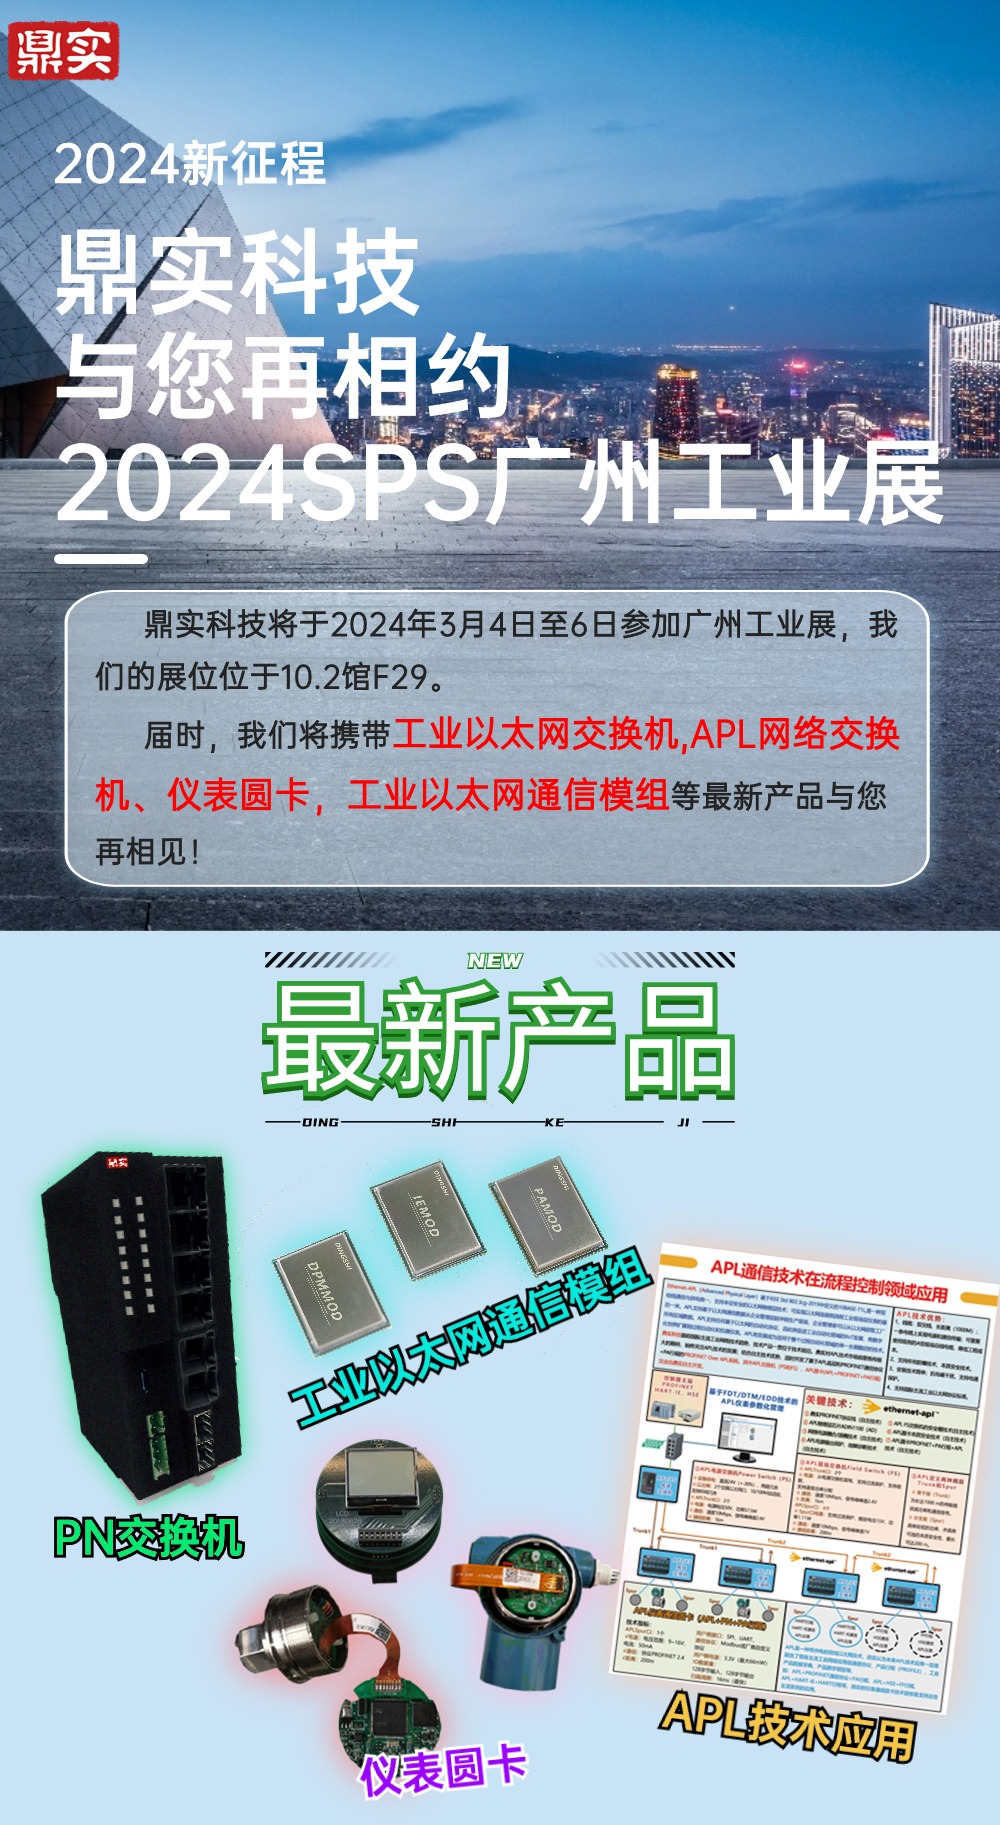 2024新征程，第一站廣州國際智能制造展會